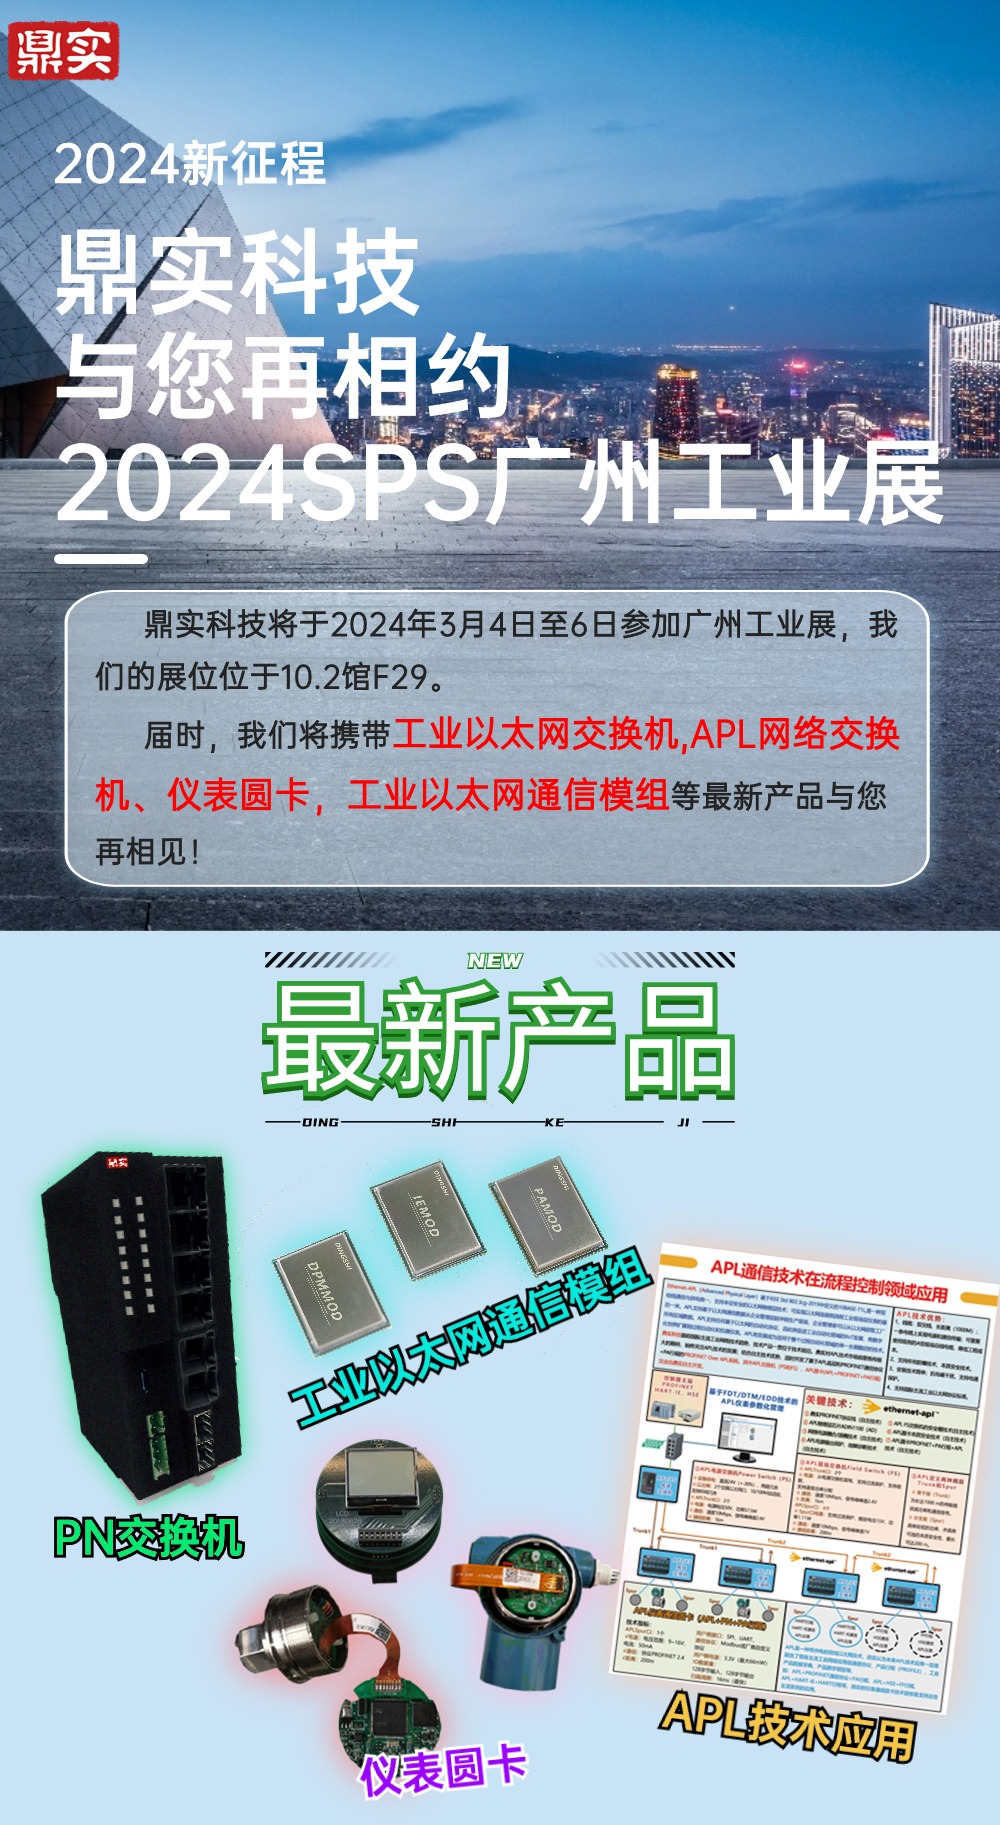 2024新征程，第一站廣州國際智能制造展會